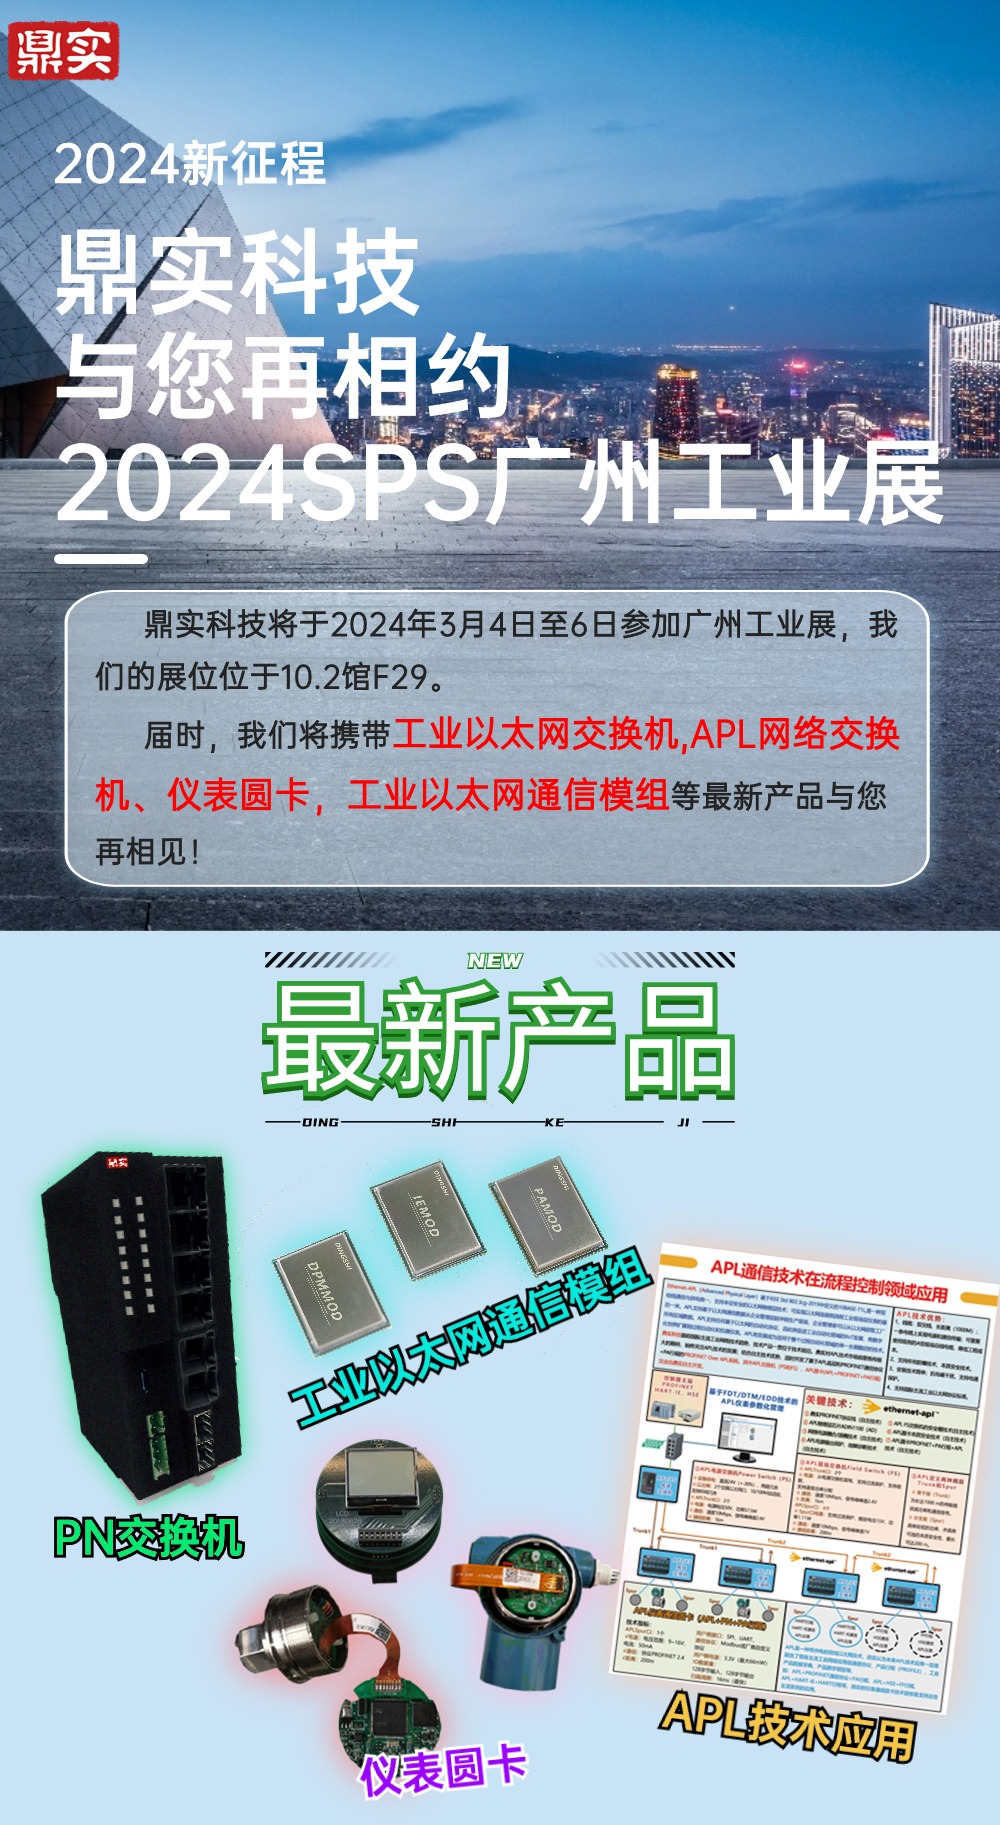 2024新征程，第一站廣州國際智能制造展會